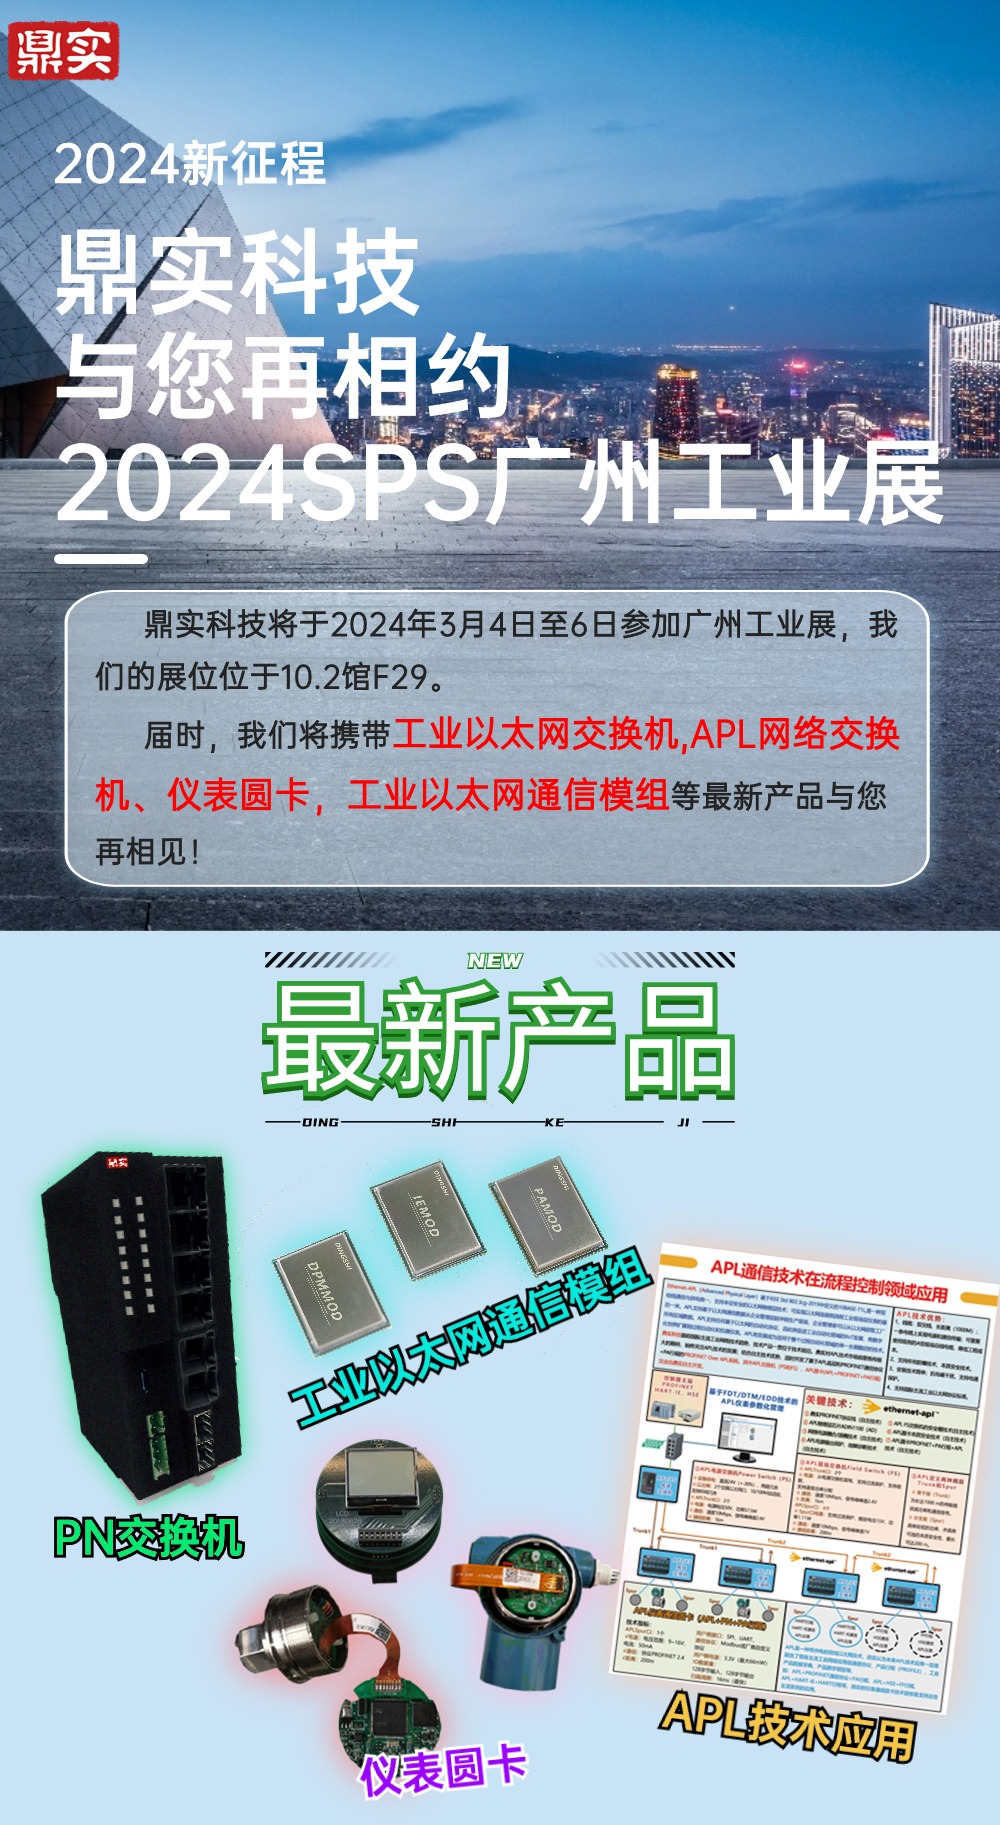 2024新征程，第一站廣州國際智能制造展會